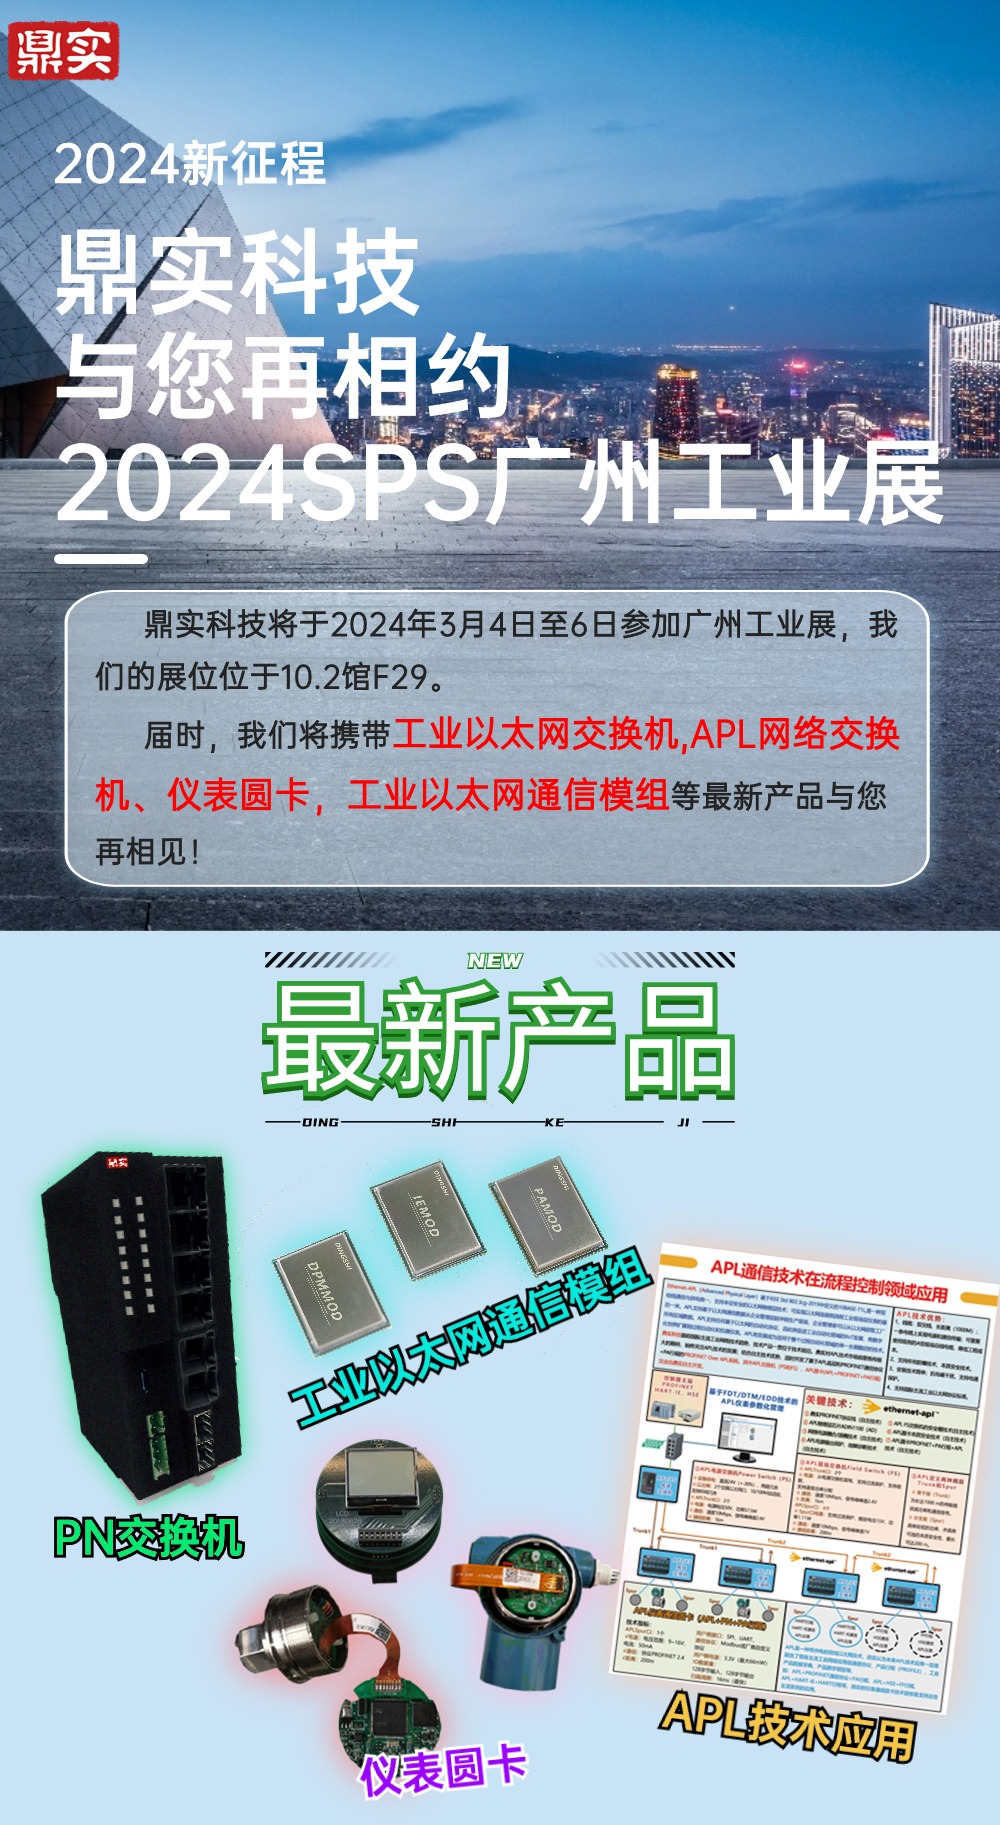 2024新征程，第一站廣州國際智能制造展會